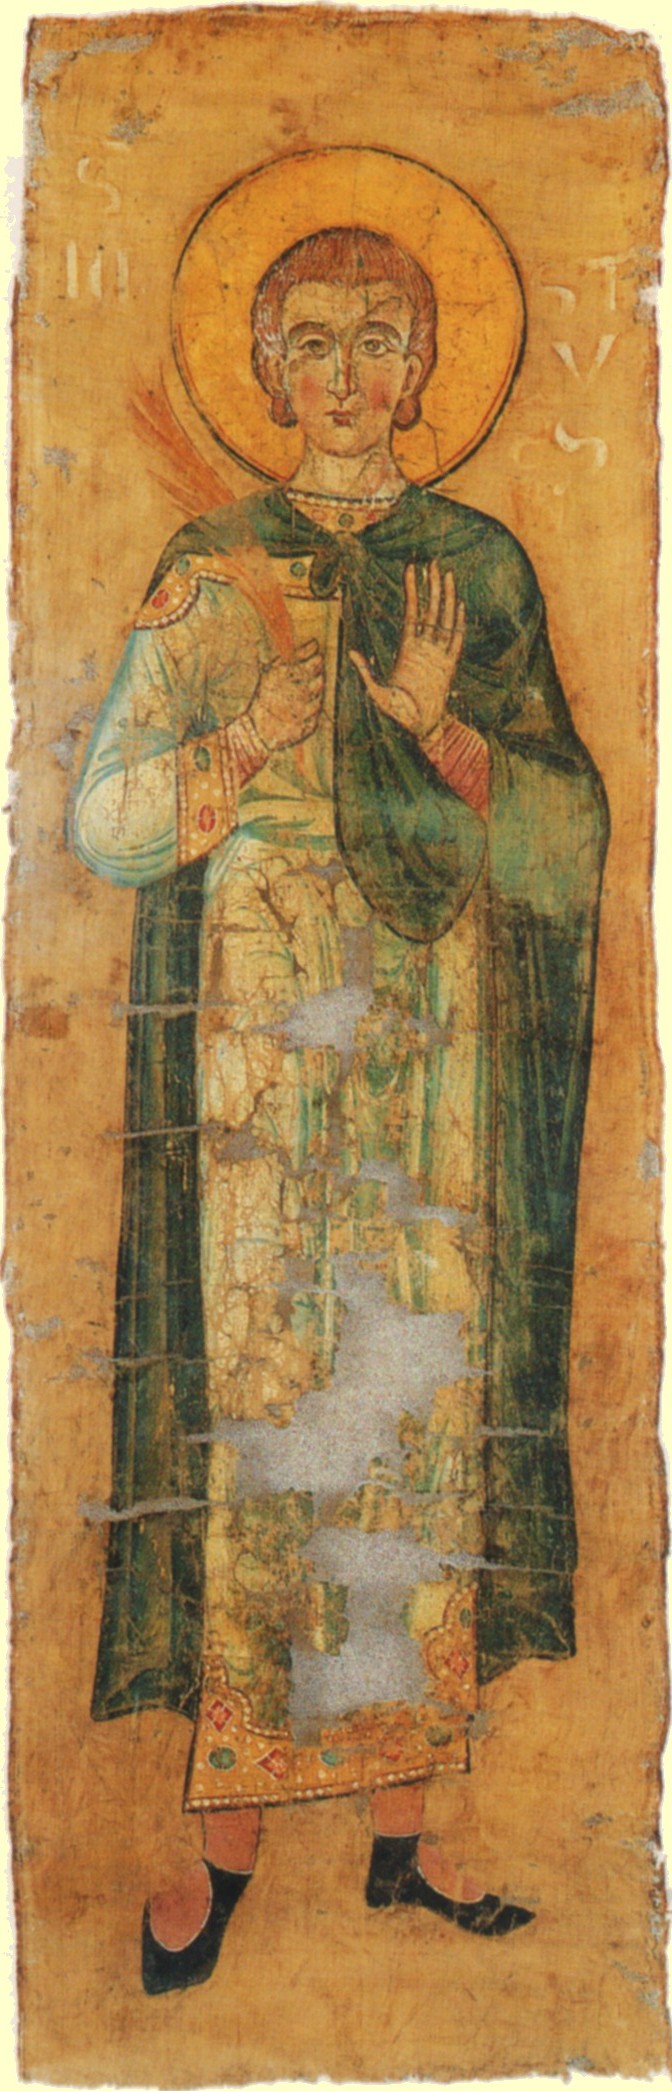 Seidentuch aus dem Reliquienschrein, Mitte des 13. Jahrhunderts